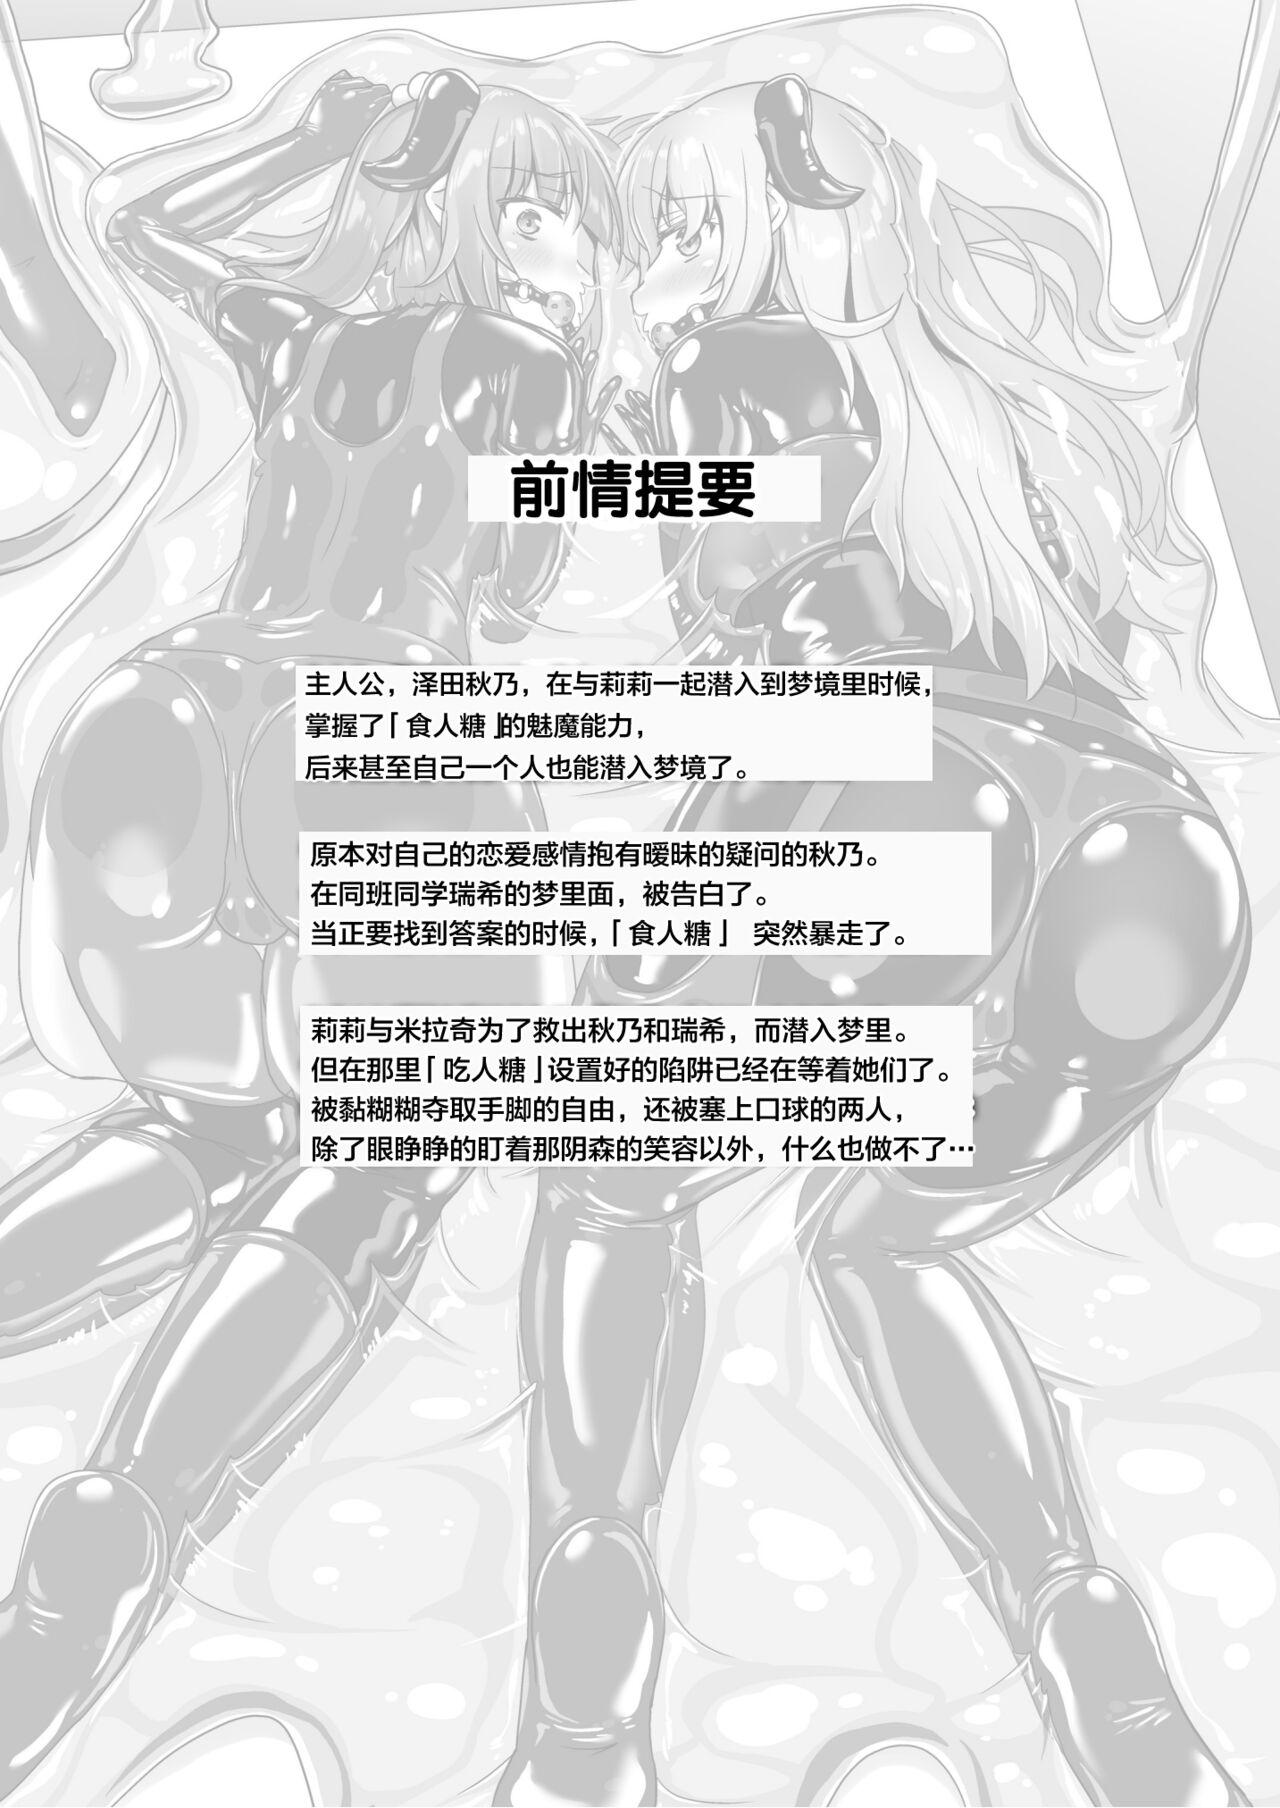 Amazing Yumewatari no Mistress night 9 - Original Rubbing - Page 6